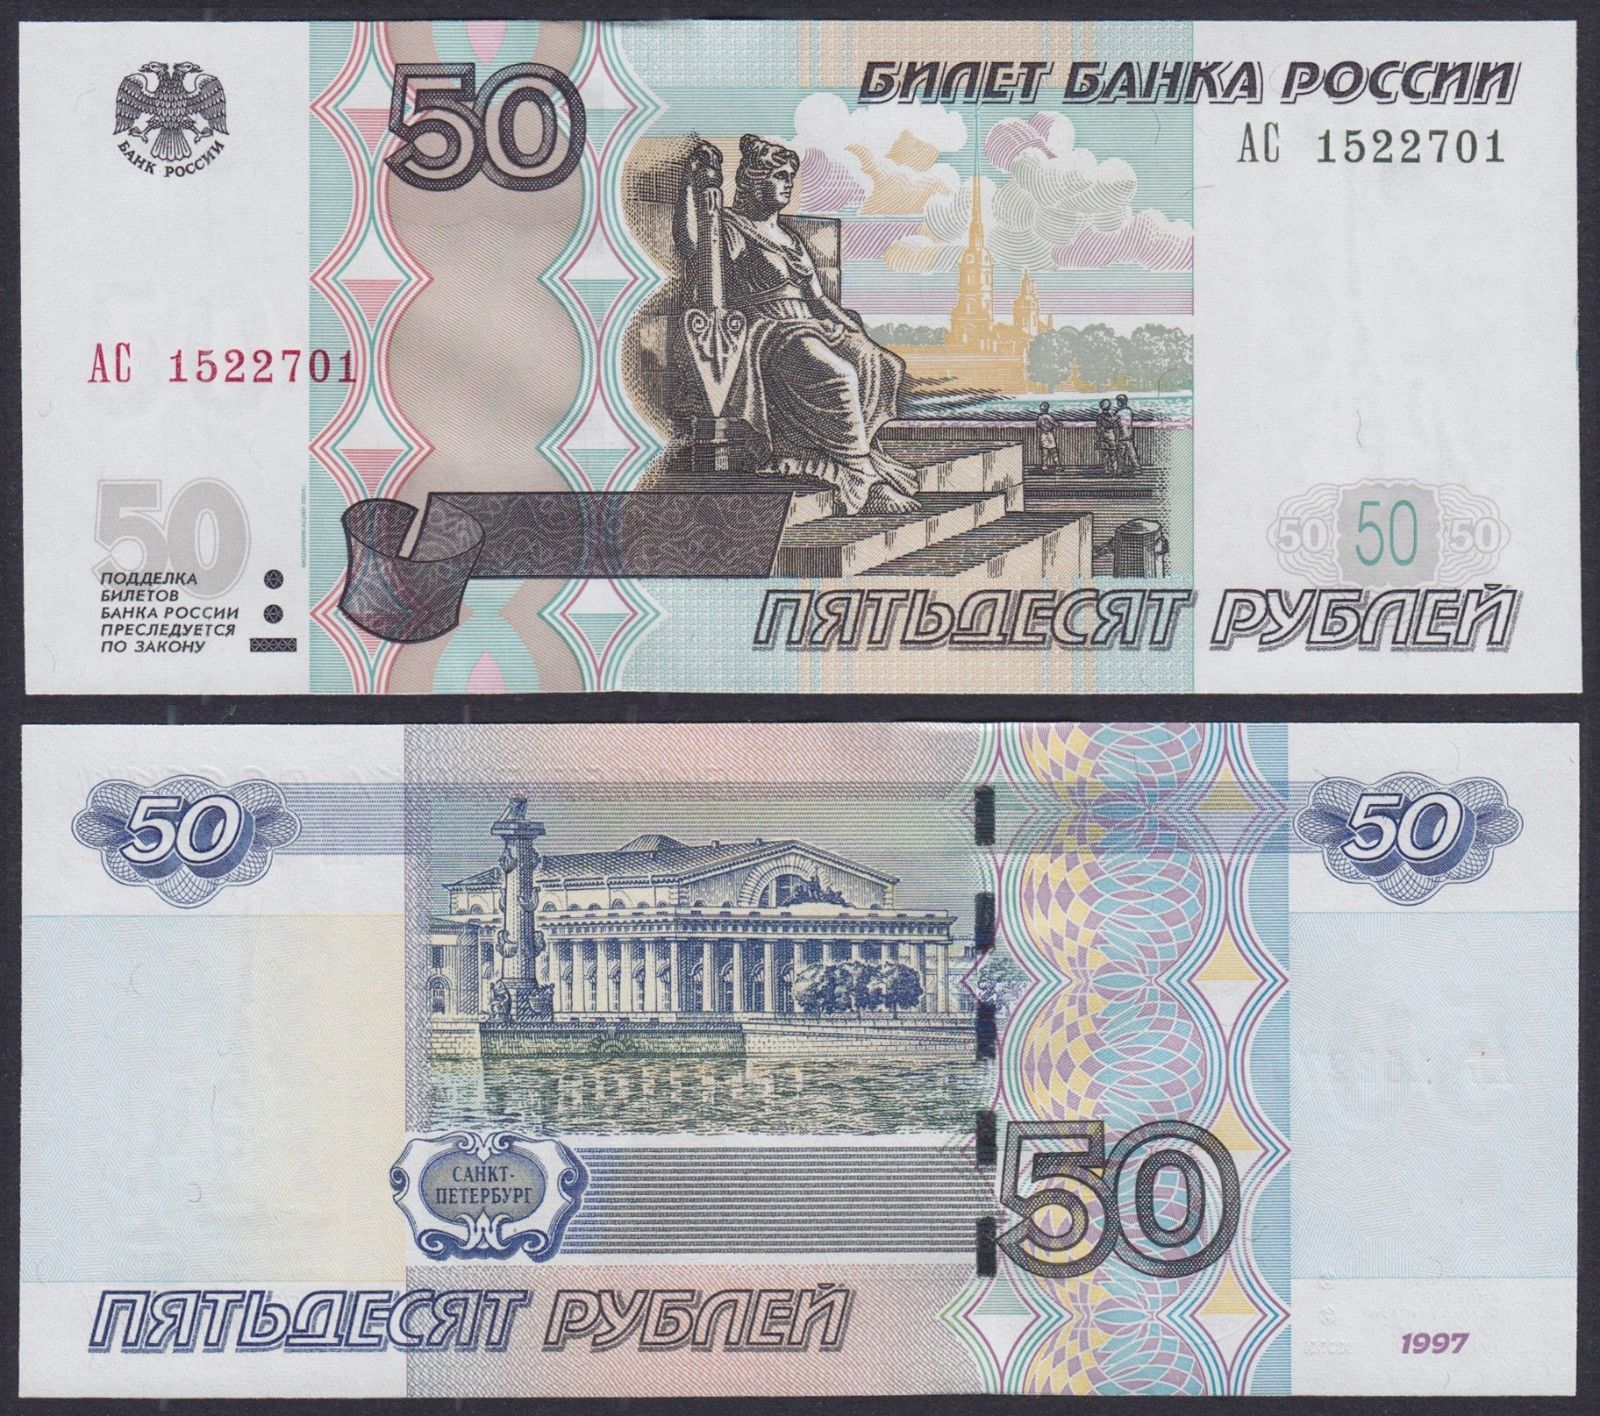 50 rubles Russia 1997